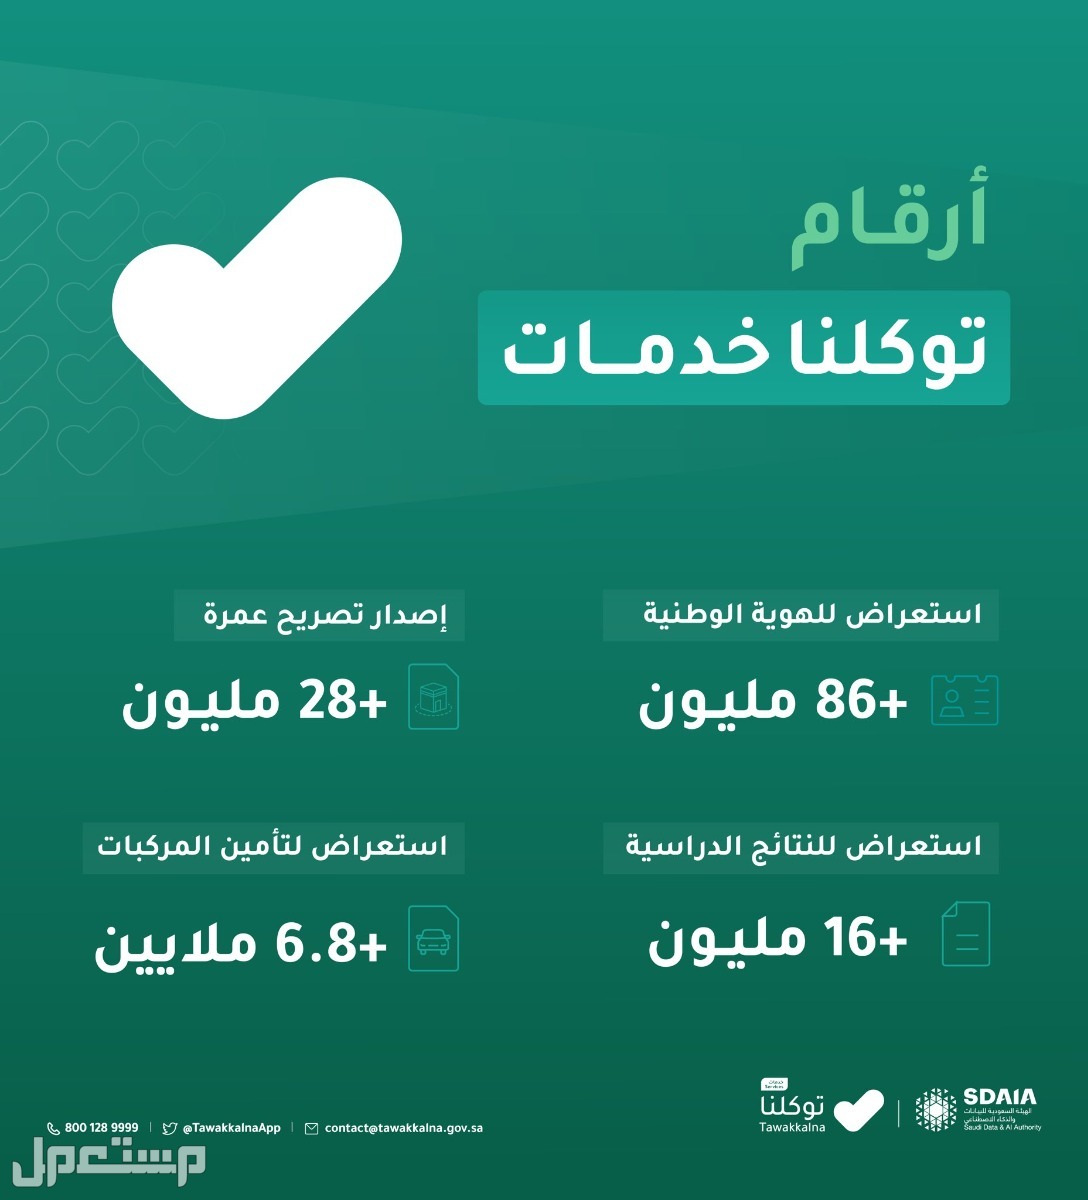 تعرّف على مواقيت الصلاة في مدينتك عبر تطبيق توكلنا 1444 في عمان أرقات "توكلنا" خدمات